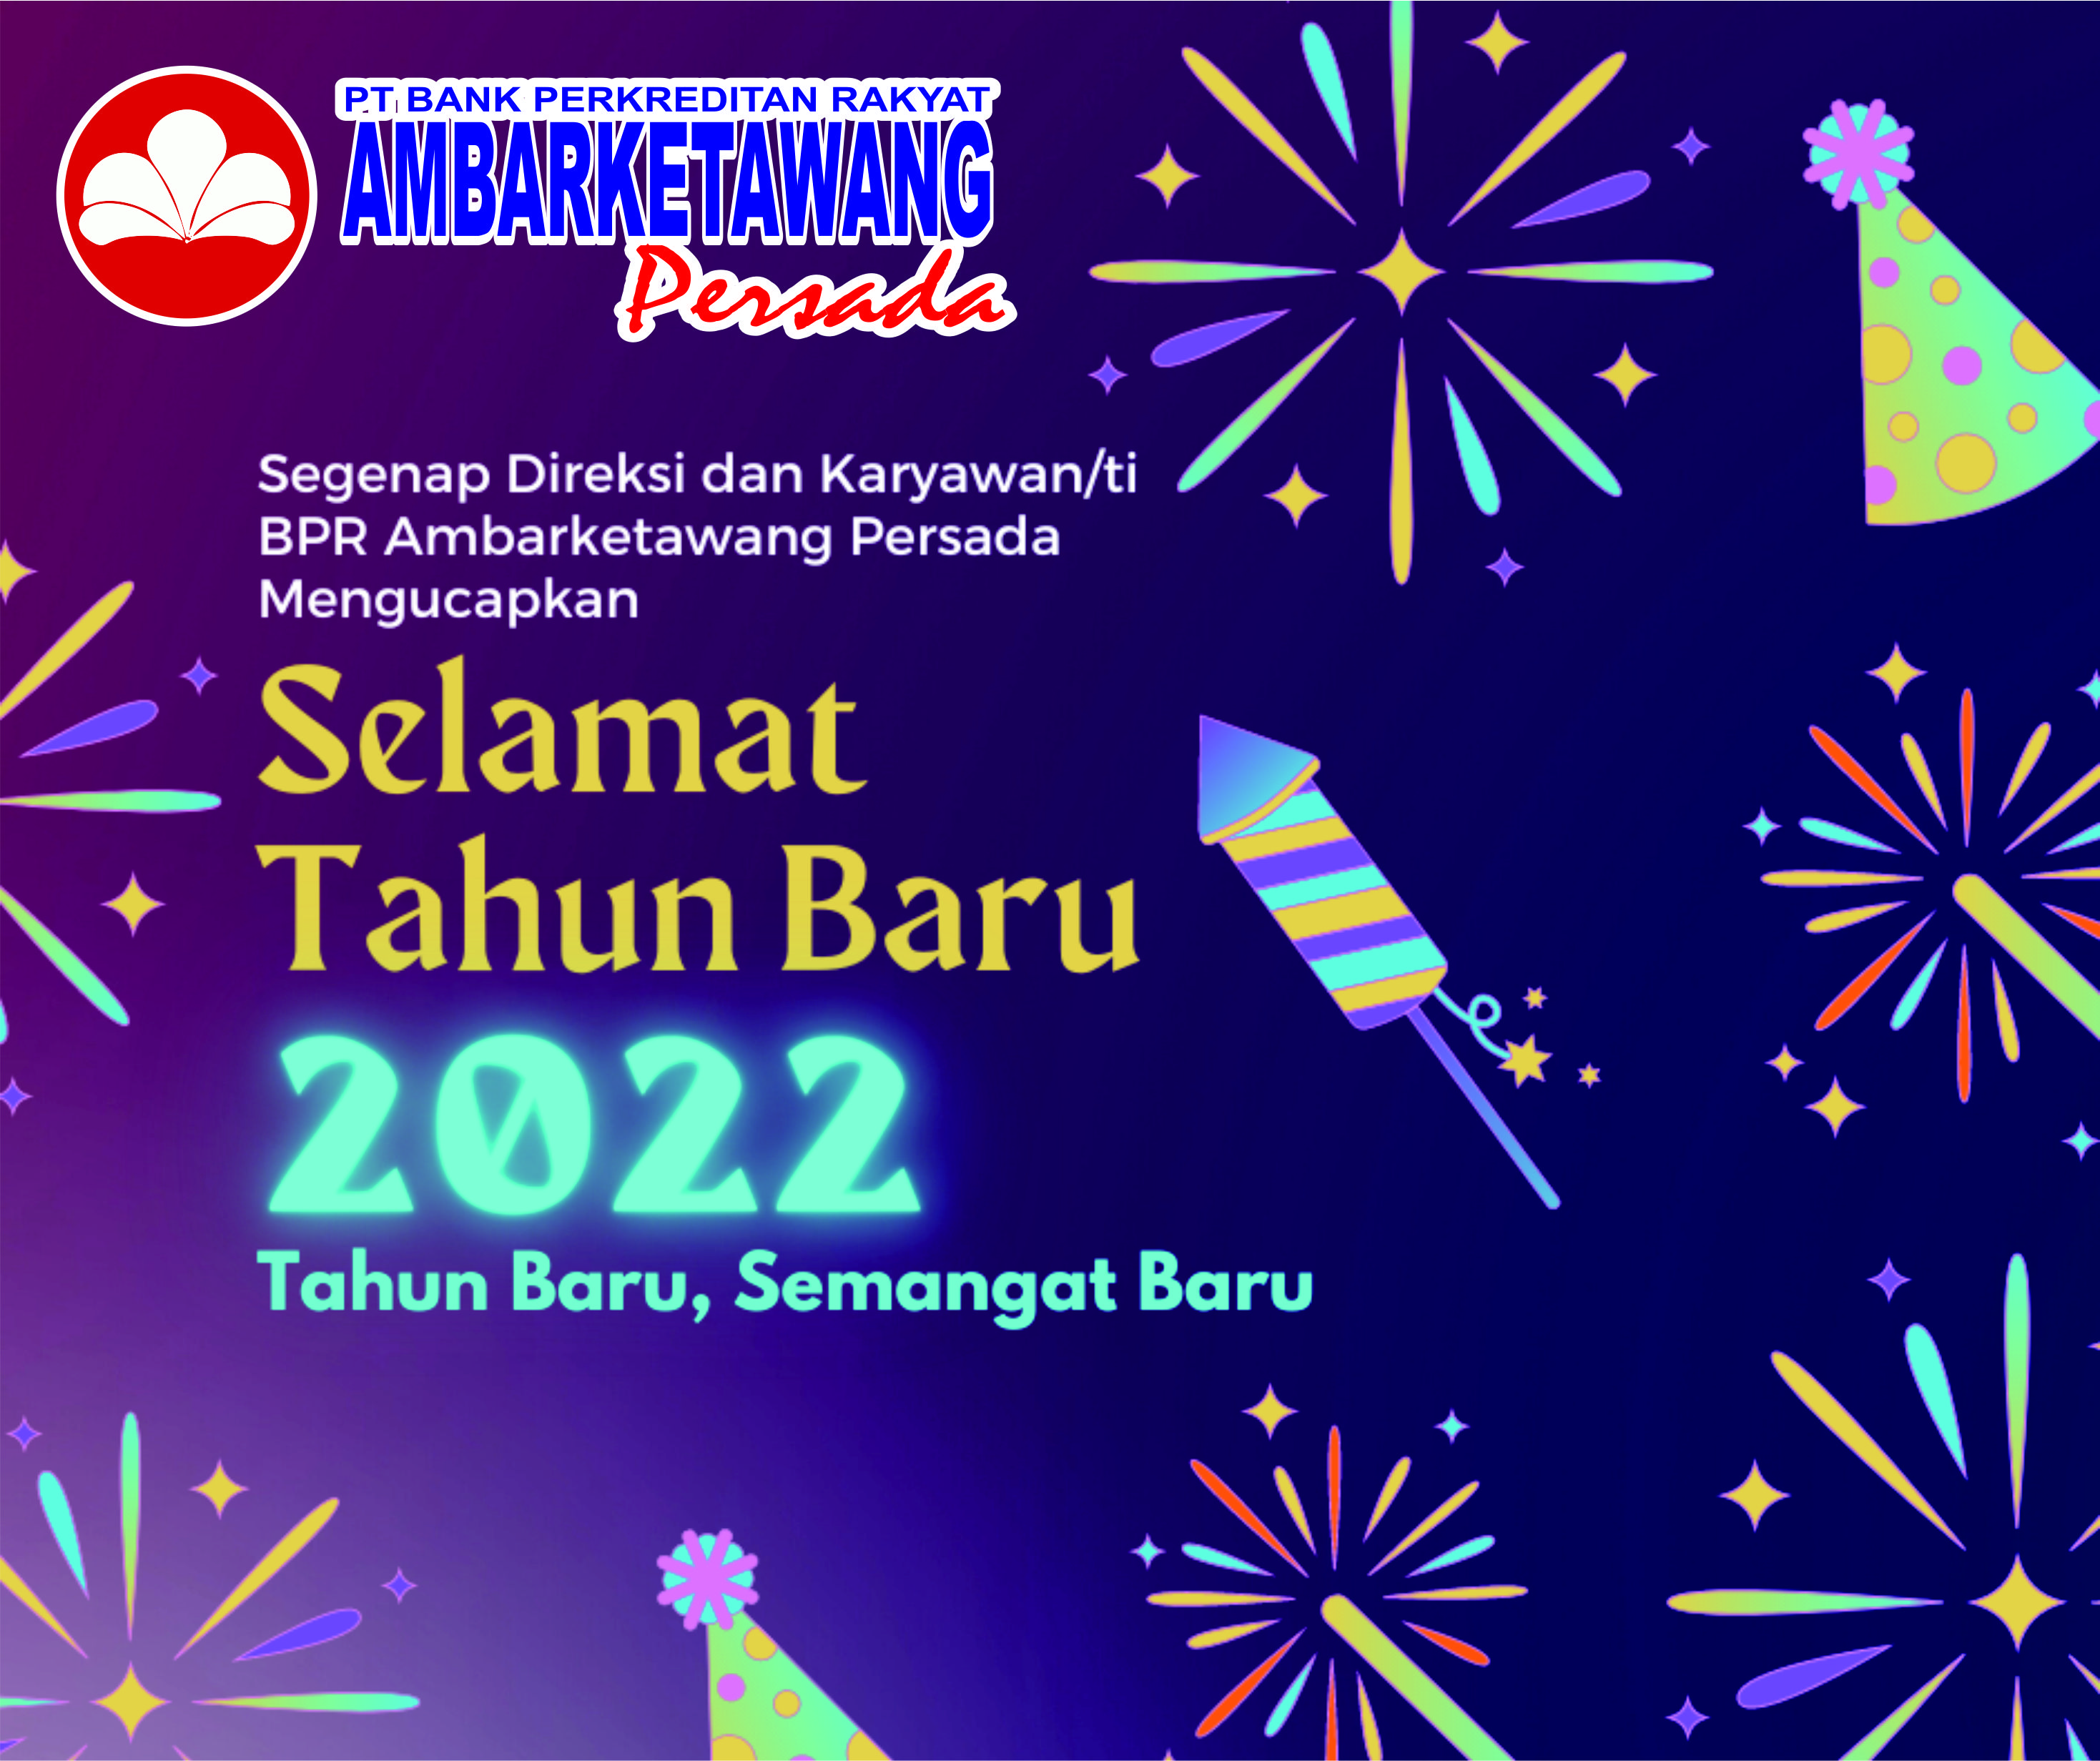 Selamat Tahun Baru 2022